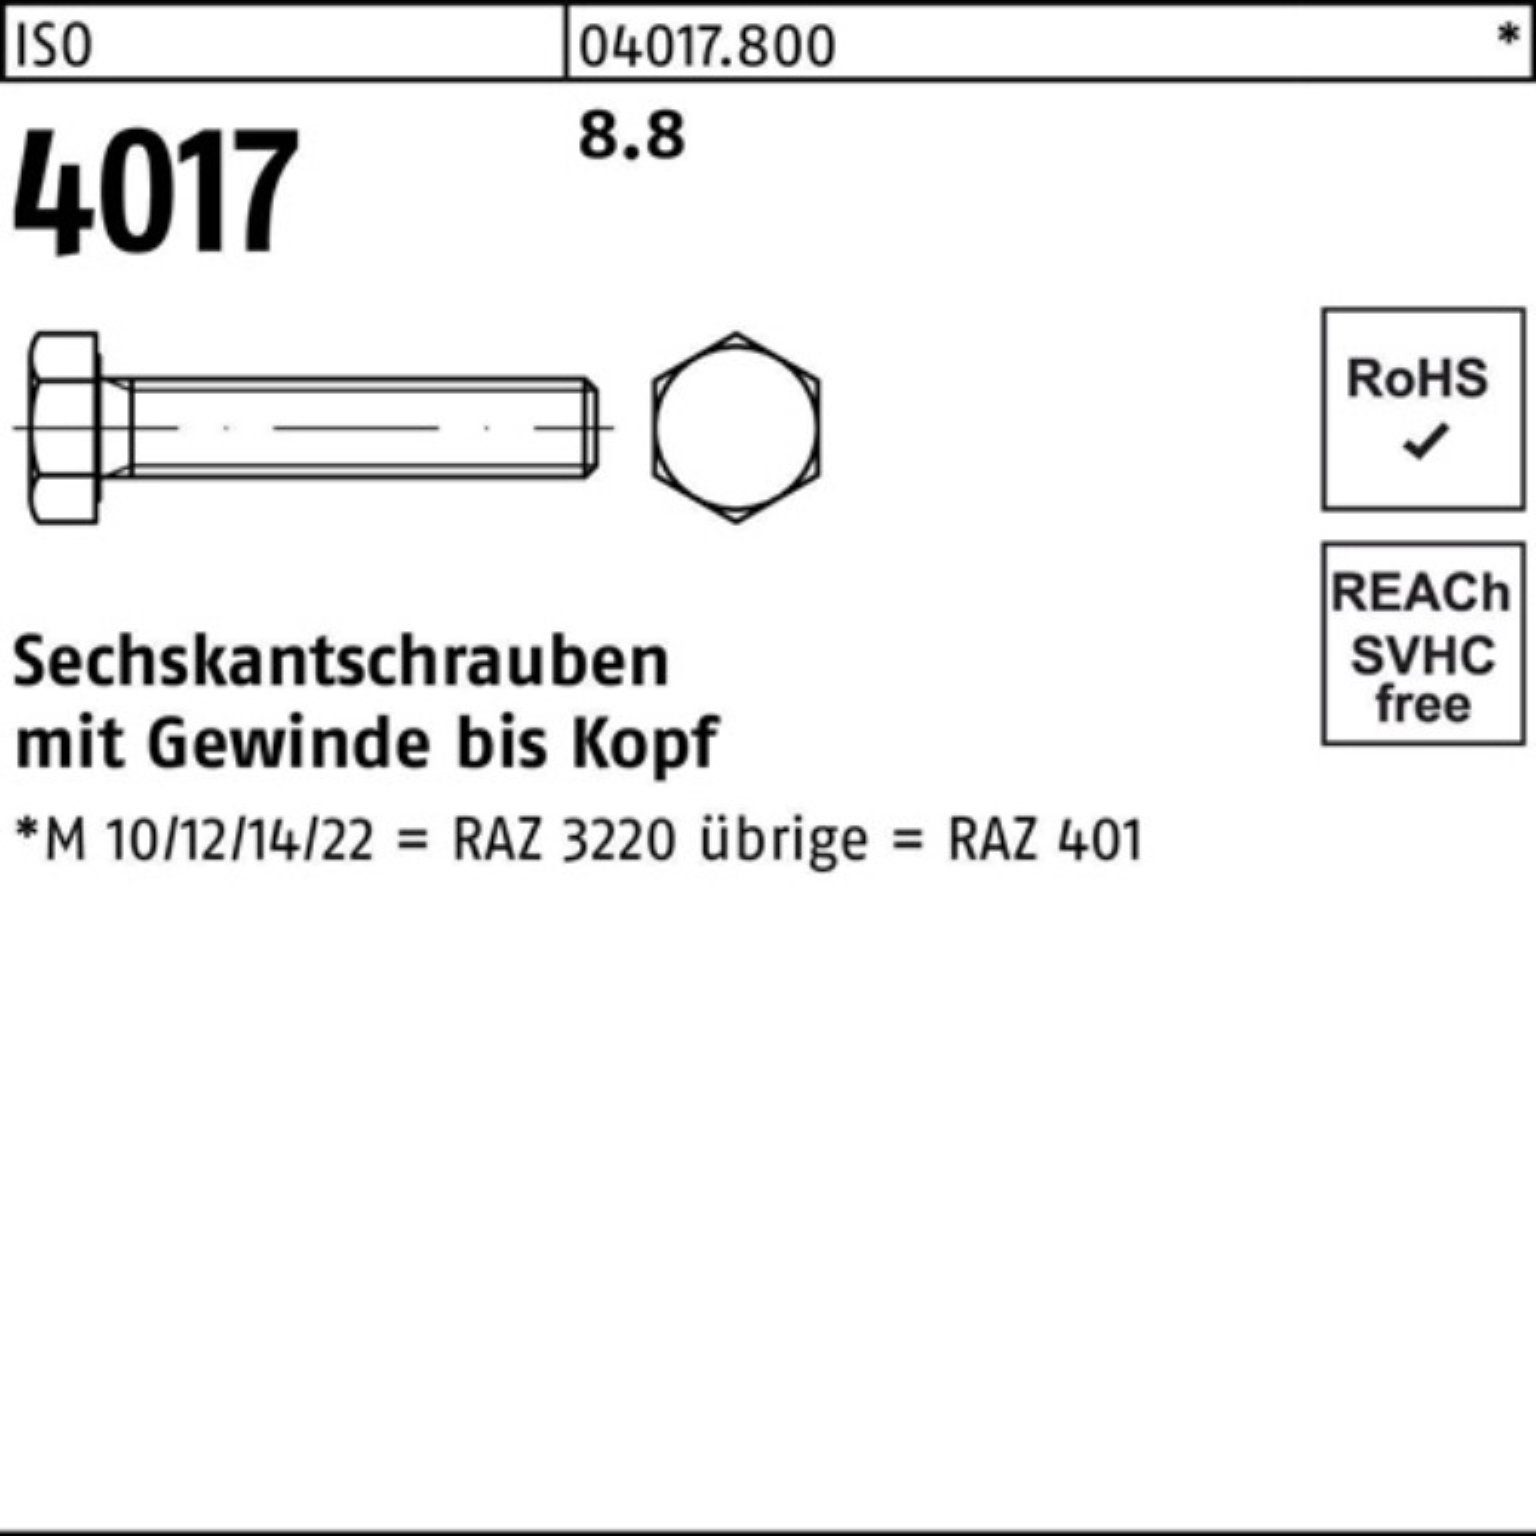 M42x Bufab Pack Sechskantschraube 1 401 VG Stück 100er 8.8 220 4017 ISO ISO Sechskantschraube